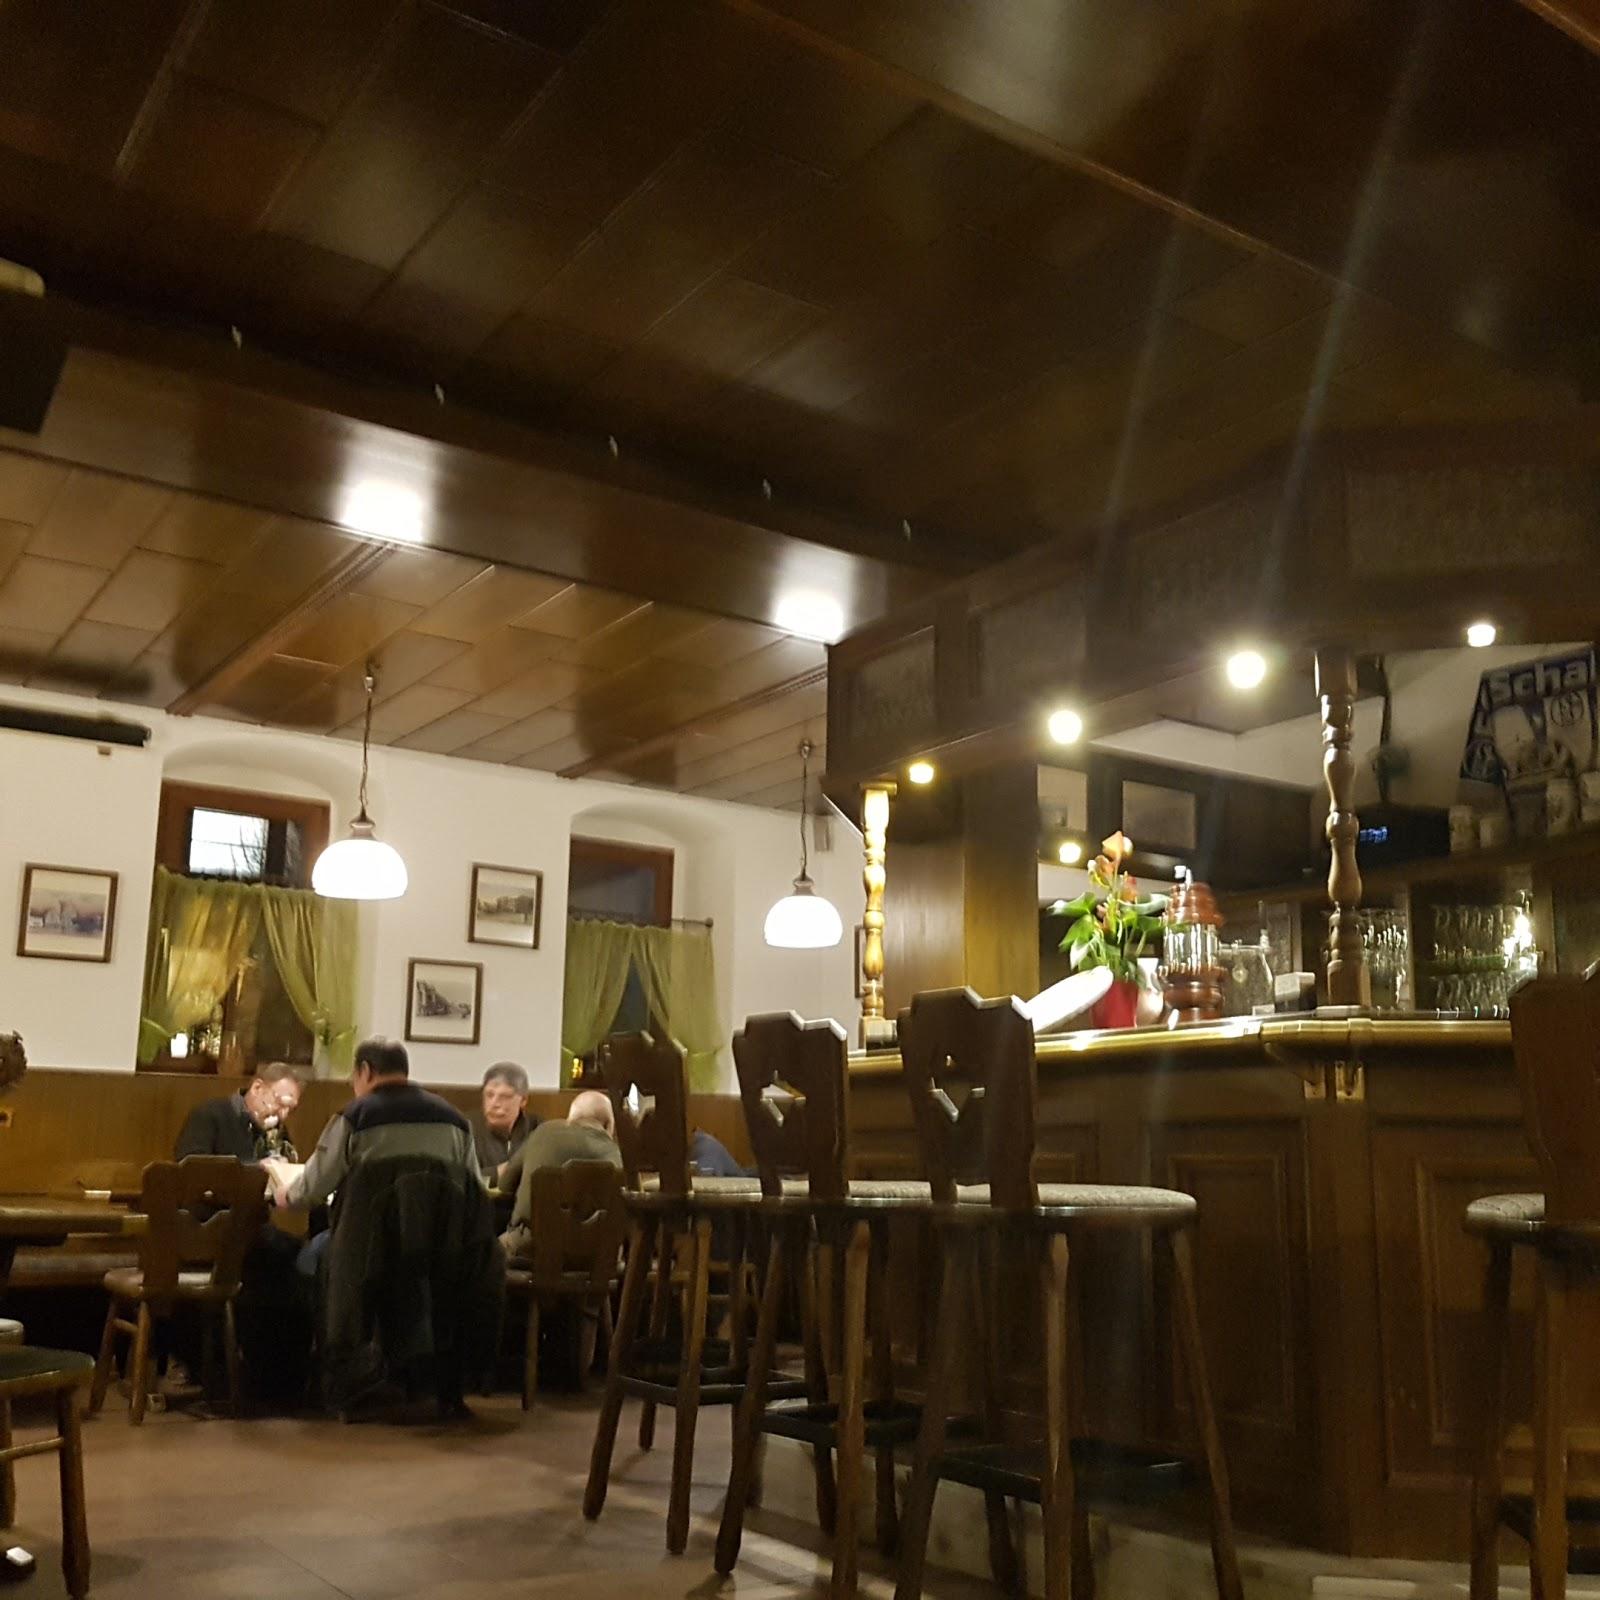 Restaurant "Ratskeller" in Teuchern